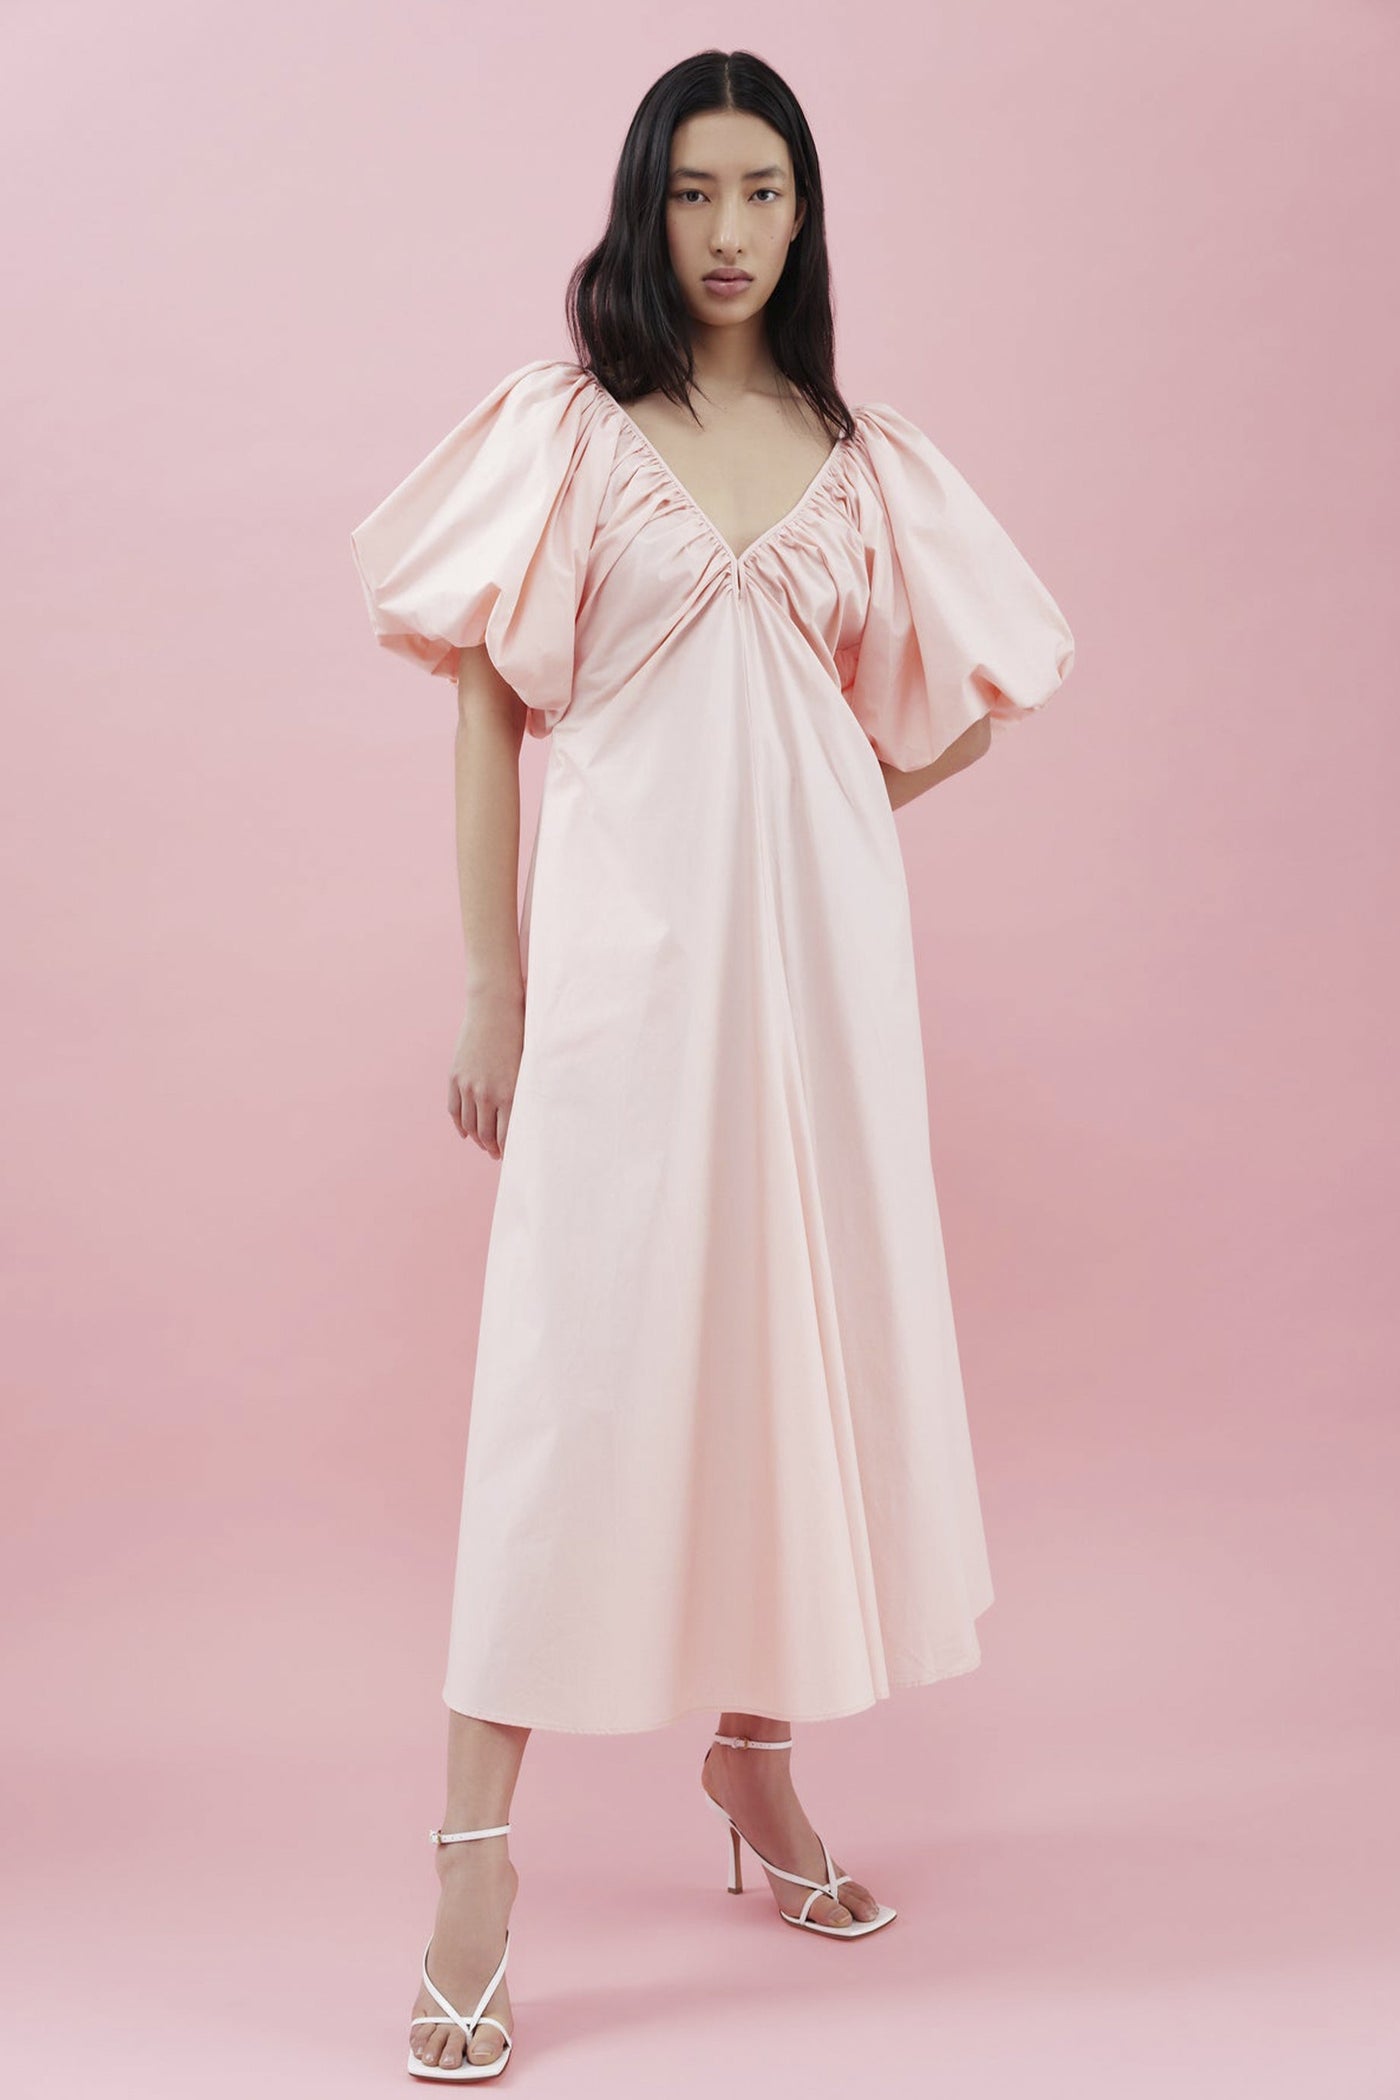 Kinney                                   Mimi Dress - Pink - Light